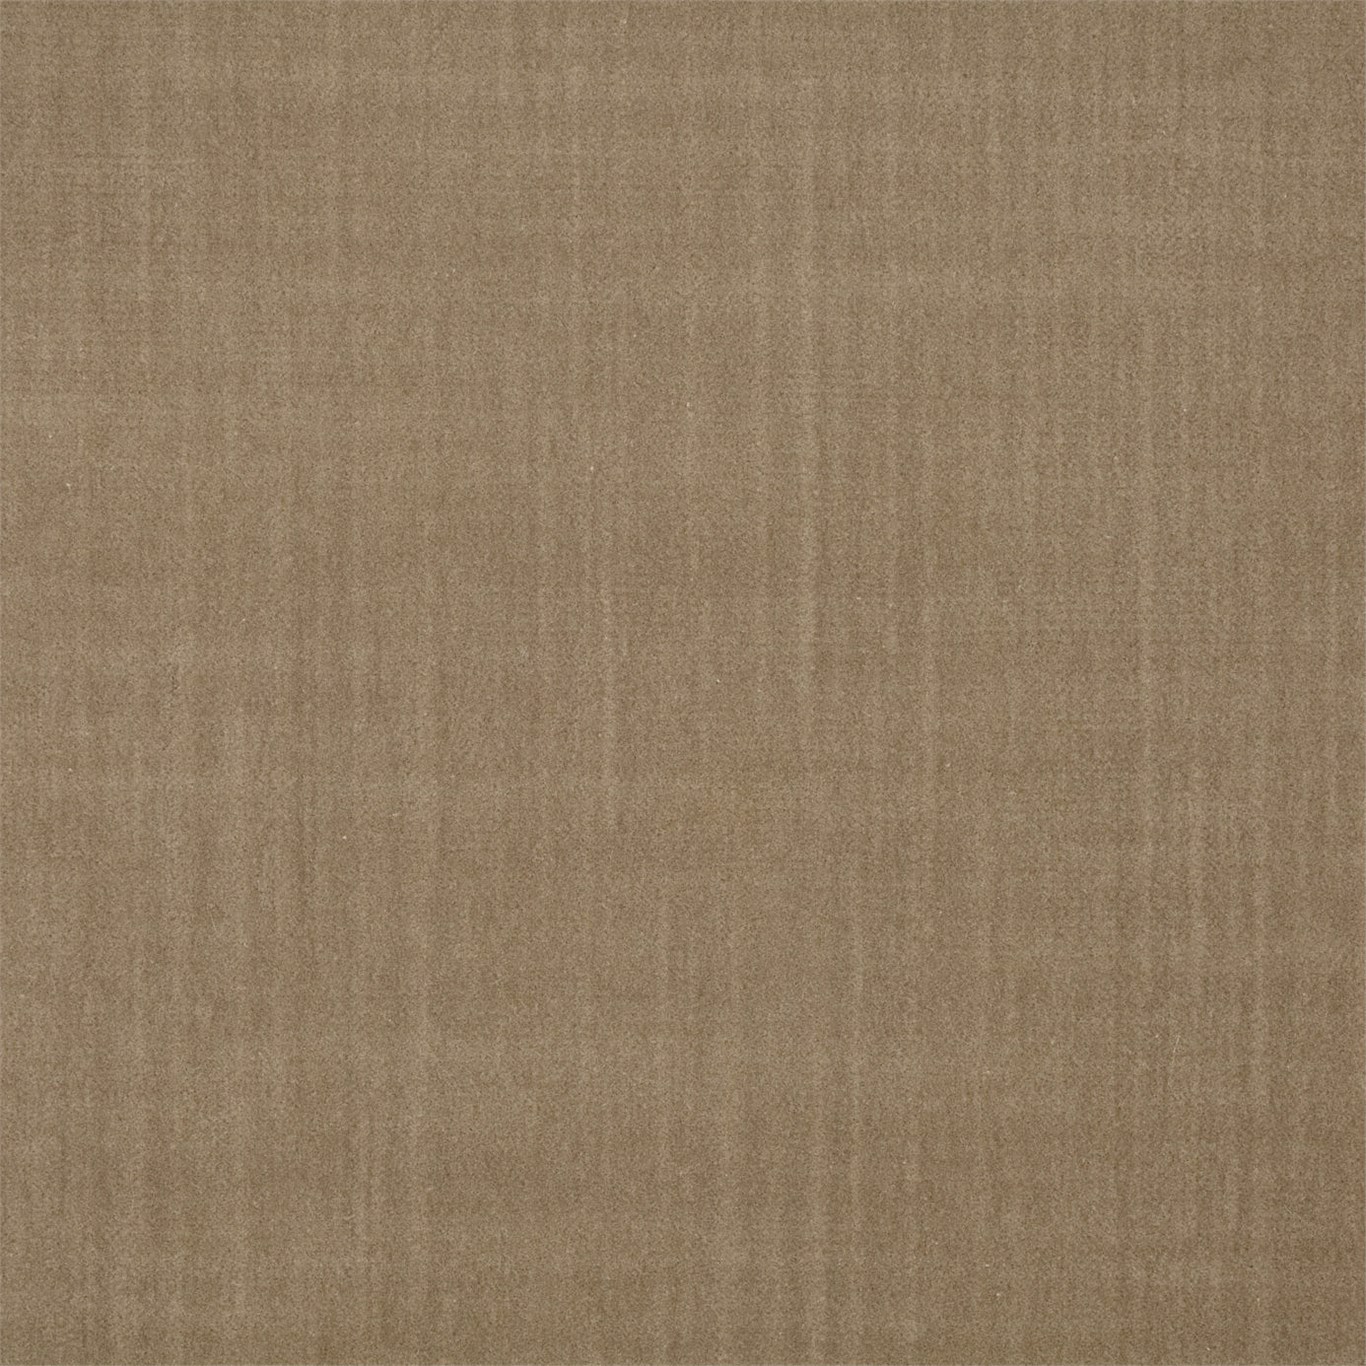 Birodo Sand Fabric by ZOF